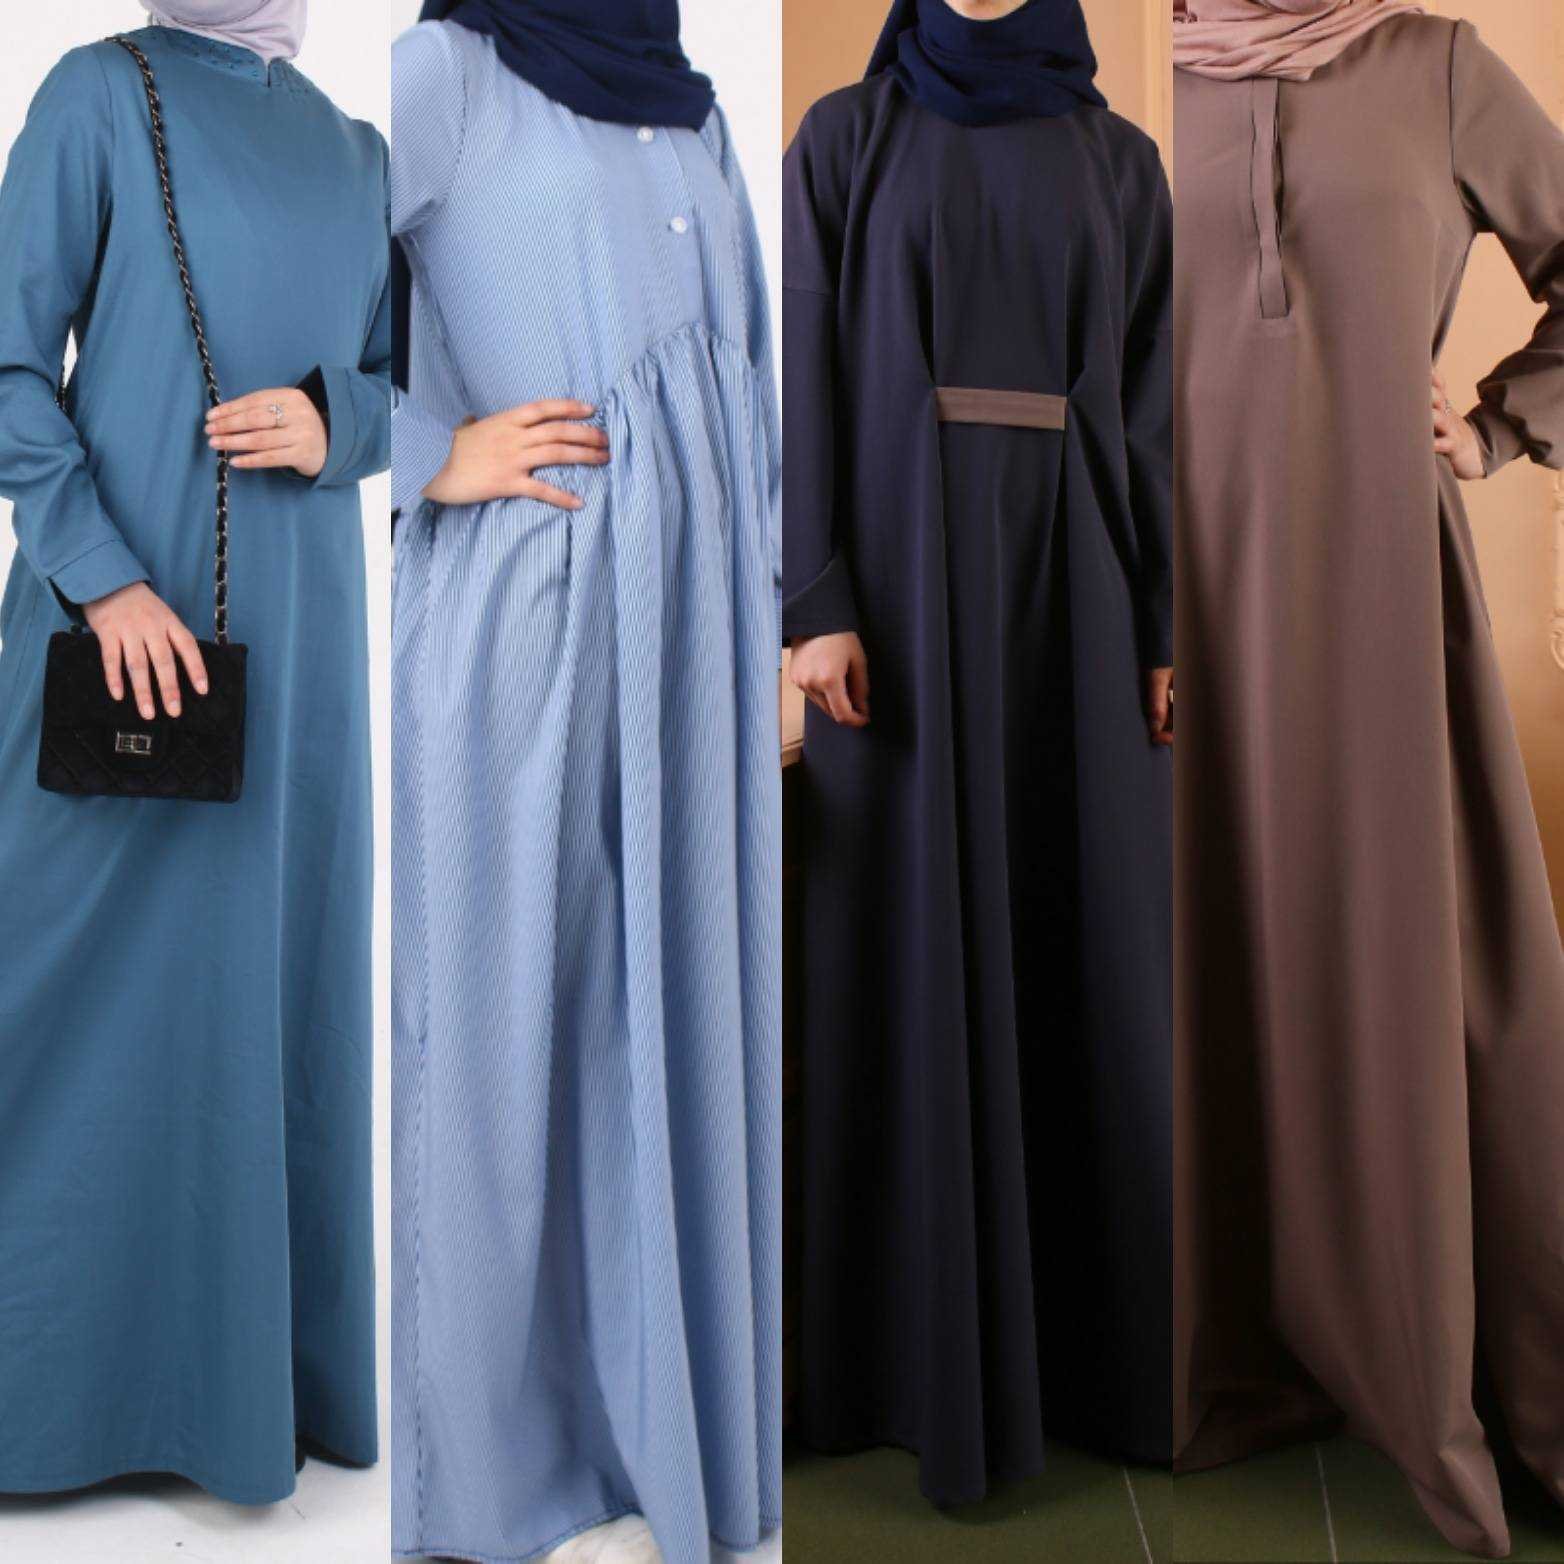 Одежда для мусульманских женщин интернет